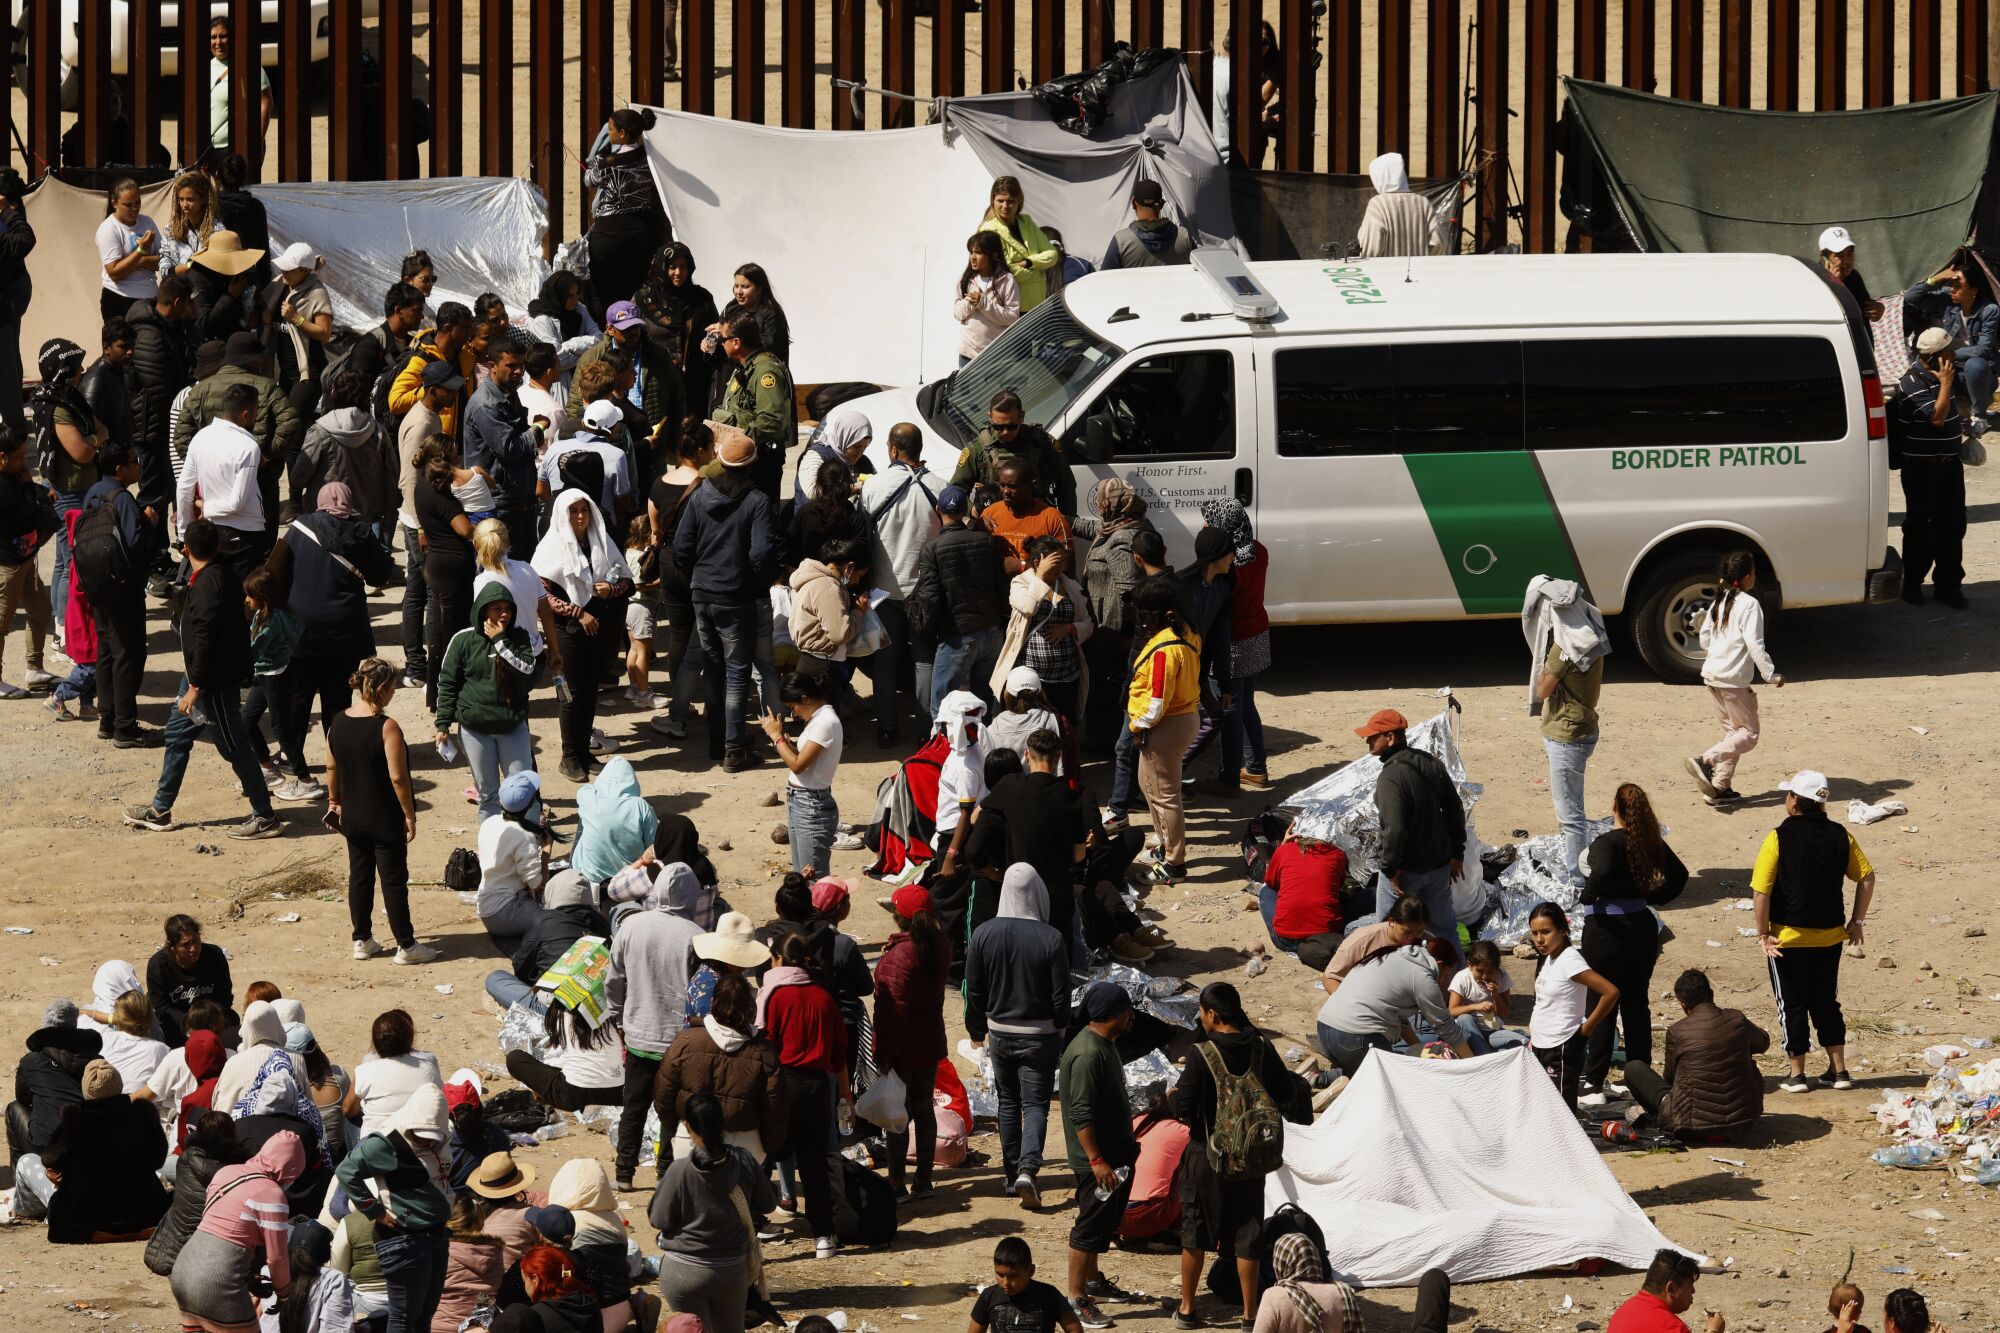 યુએસ સરહદ પેટ્રોલિંગ એજન્ટો તિજુઆના, મેક્સિકોથી યુનાઇટેડ સ્ટેટ્સમાં પ્રવેશવાની આશા રાખતા સ્થળાંતરકારો સાથે વાત કરે છે